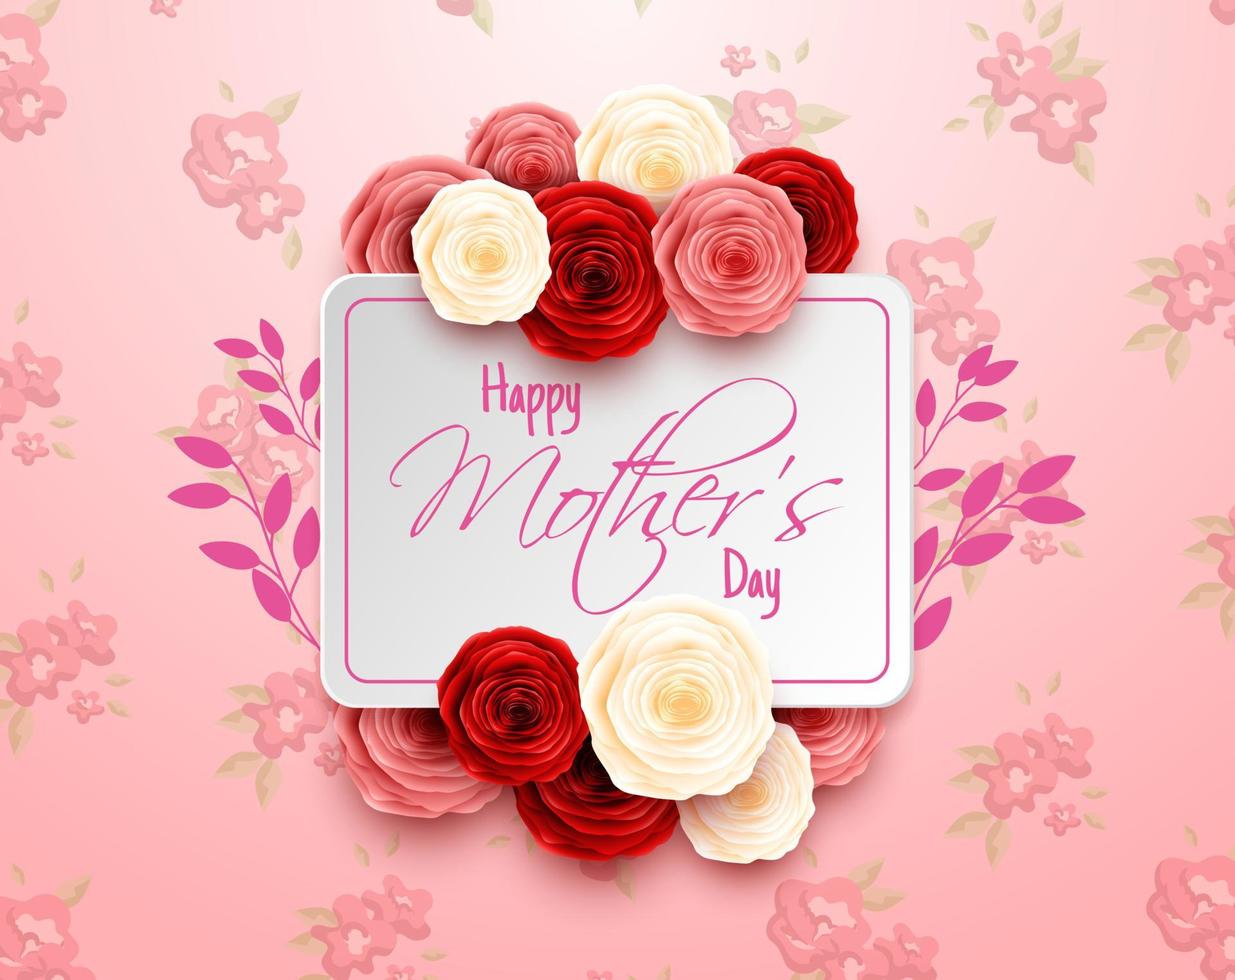 bonne fête des mères avec des fleurs roses et des coeurs vecteur